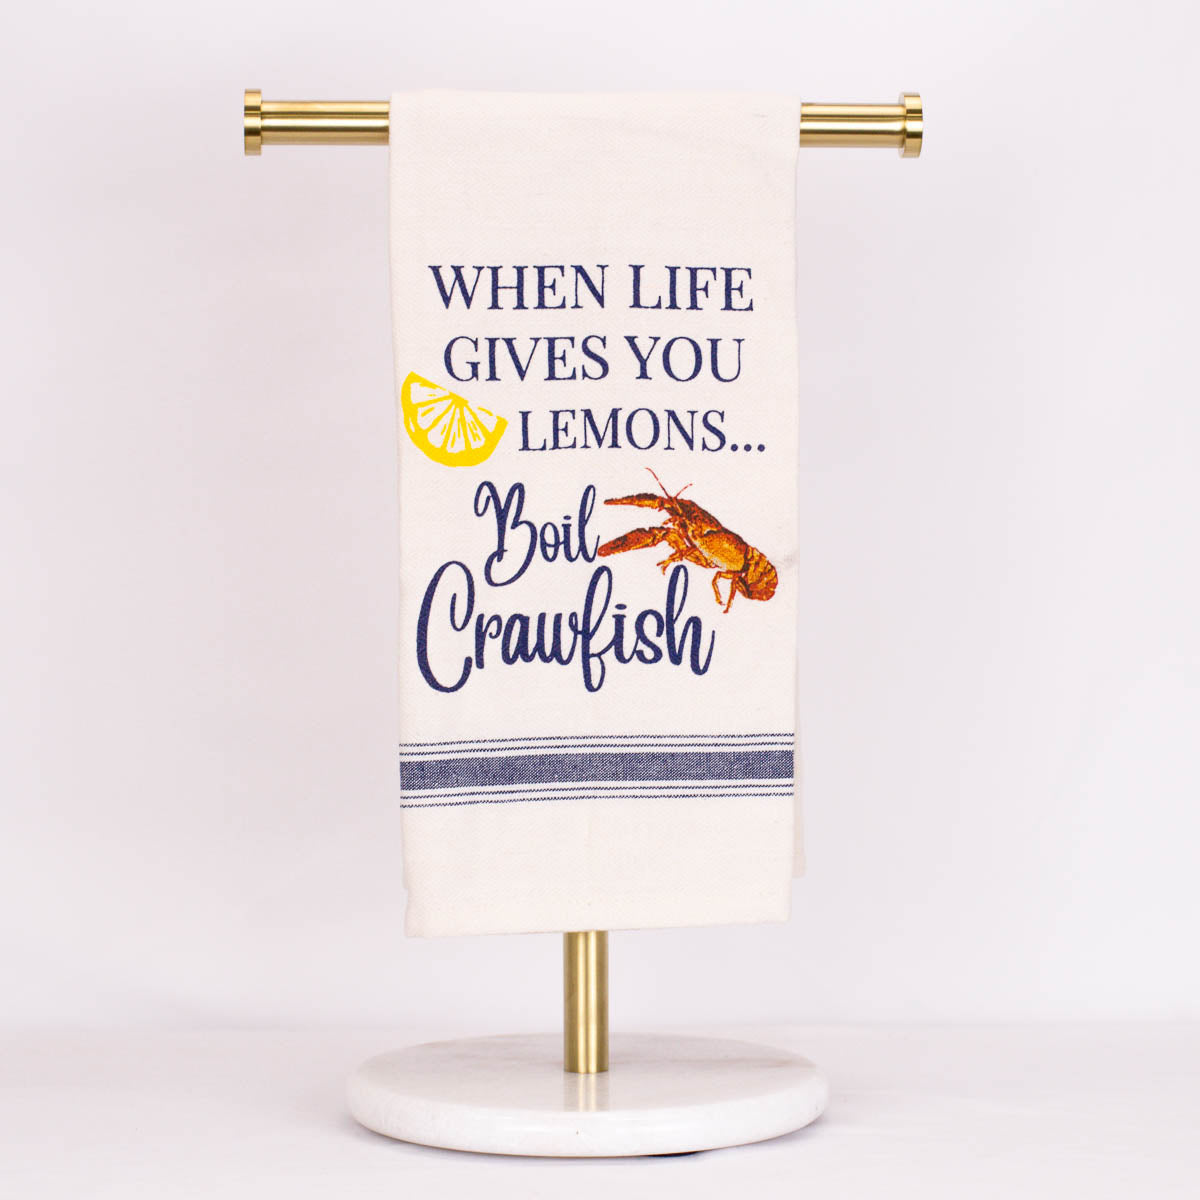 Lemon Crawfish Boil Towel